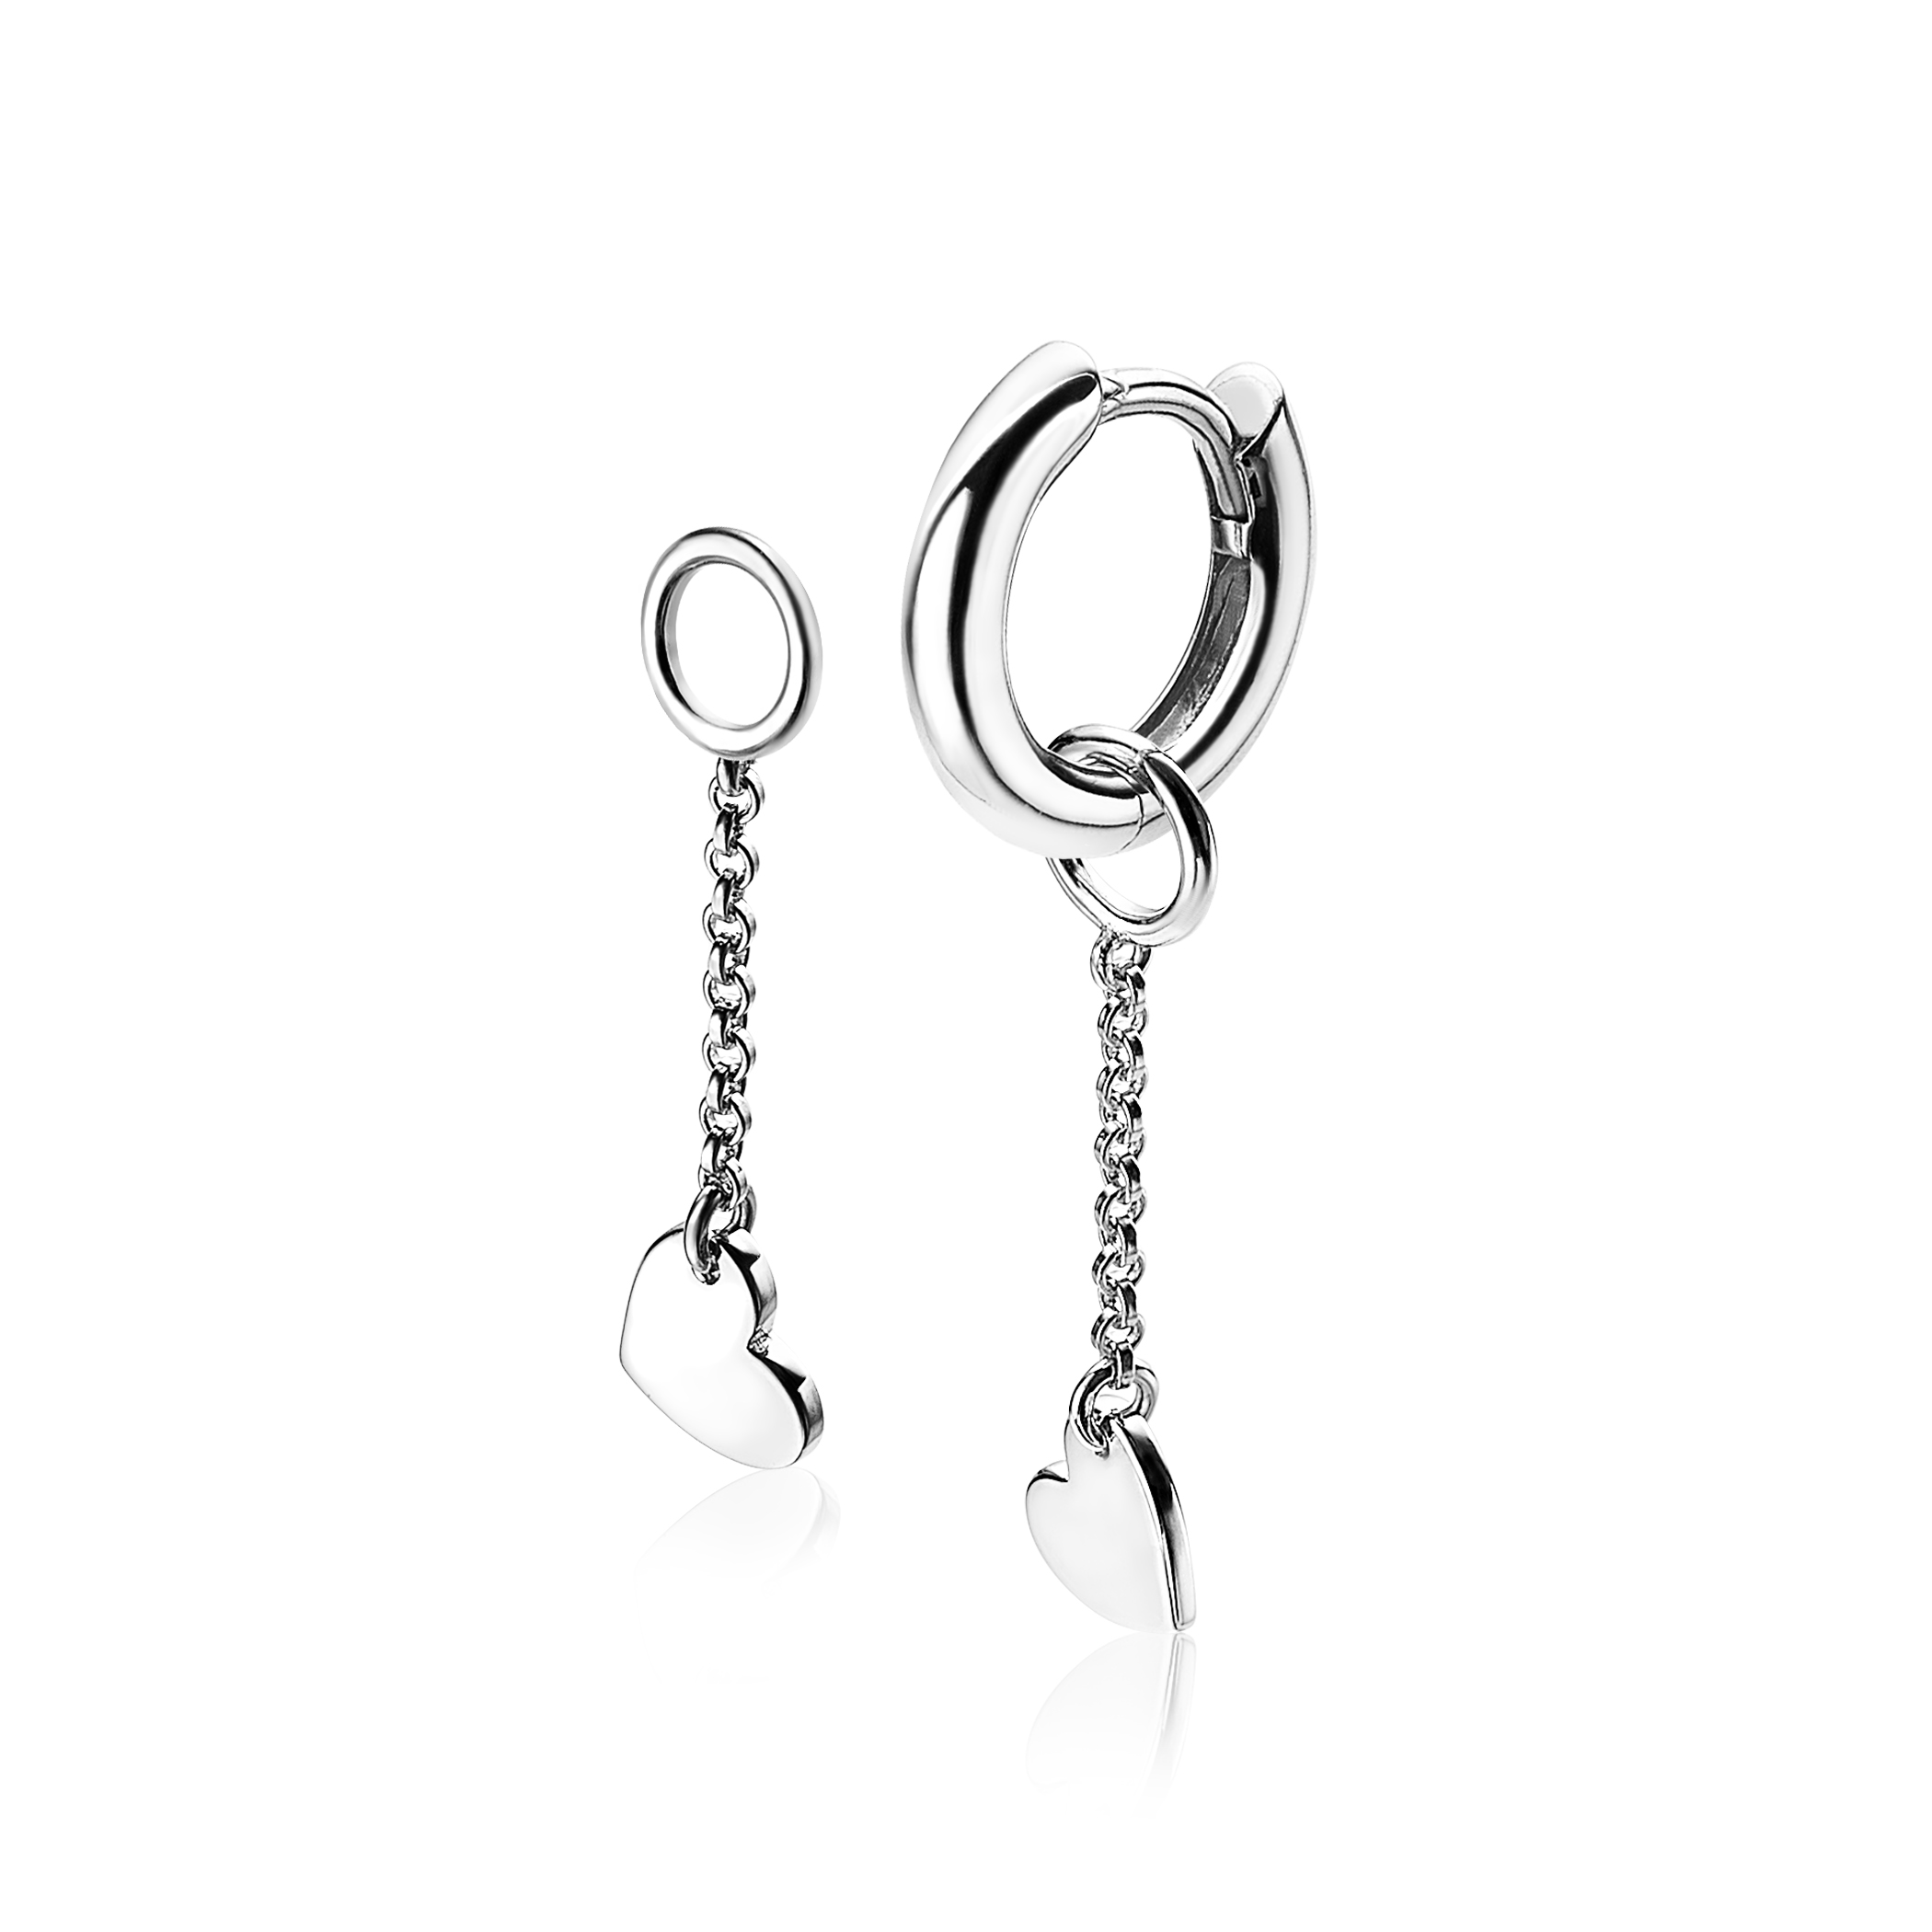 ZINZI Sterling Silver Earrings Pendants Heart ZICH1690 (excl. hoop earrings)